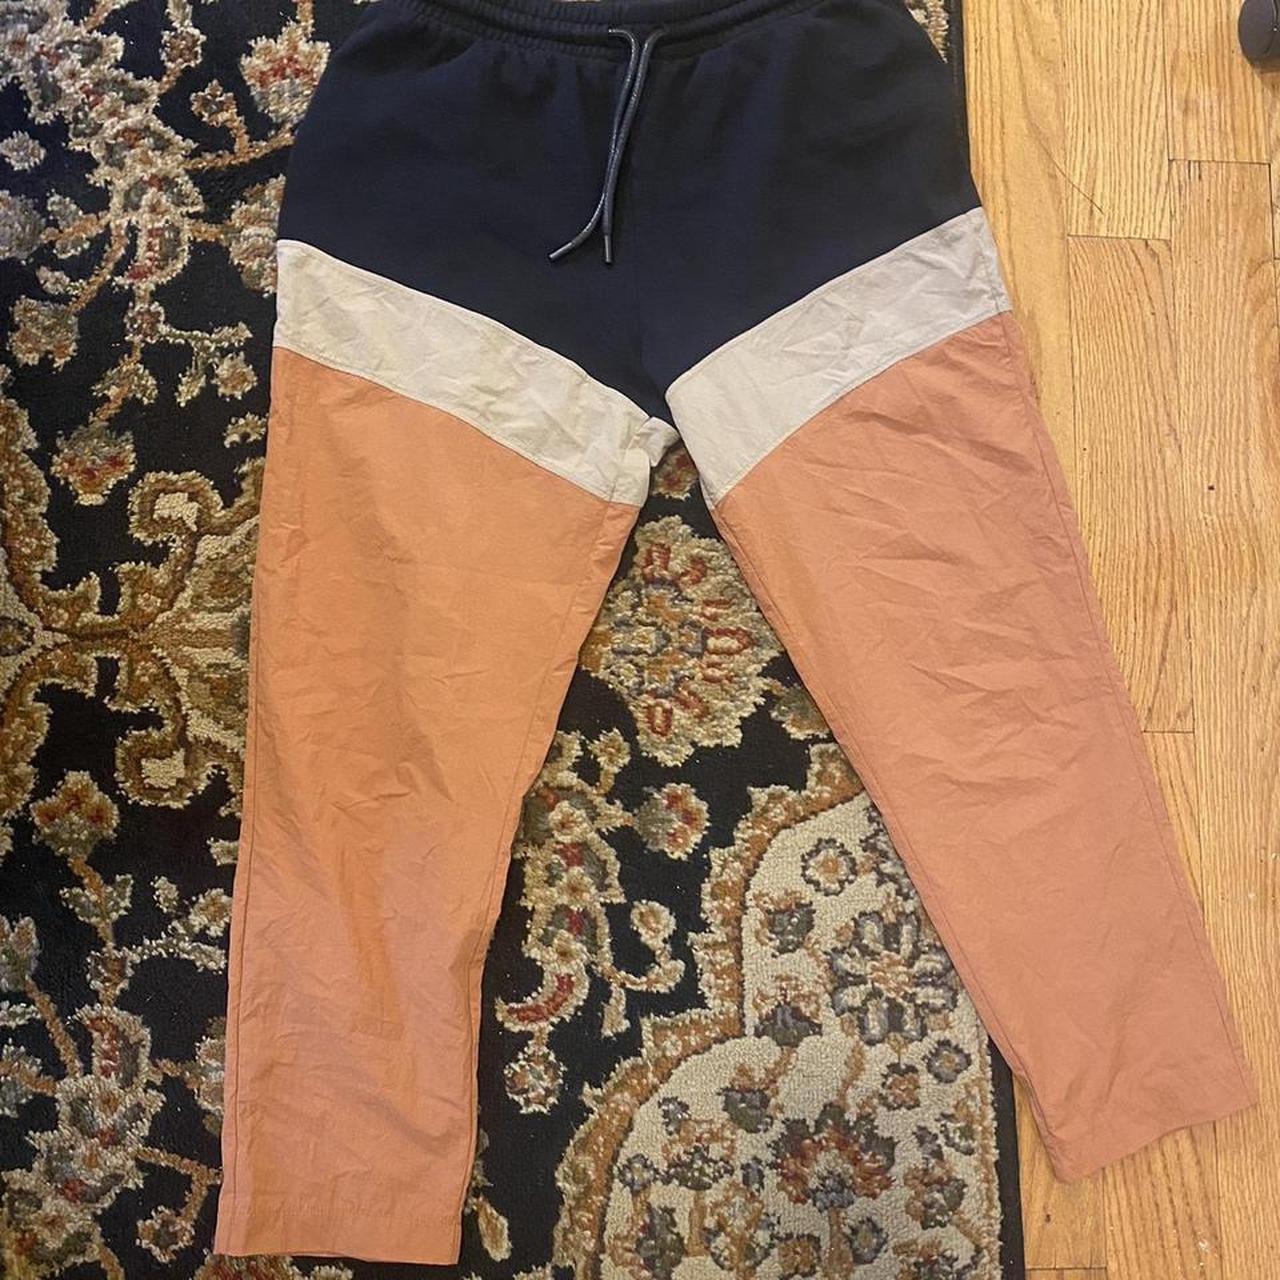 Buy Highlander Navy Slim Fit Track Pants for Men Online at Rs.449 - Ketch